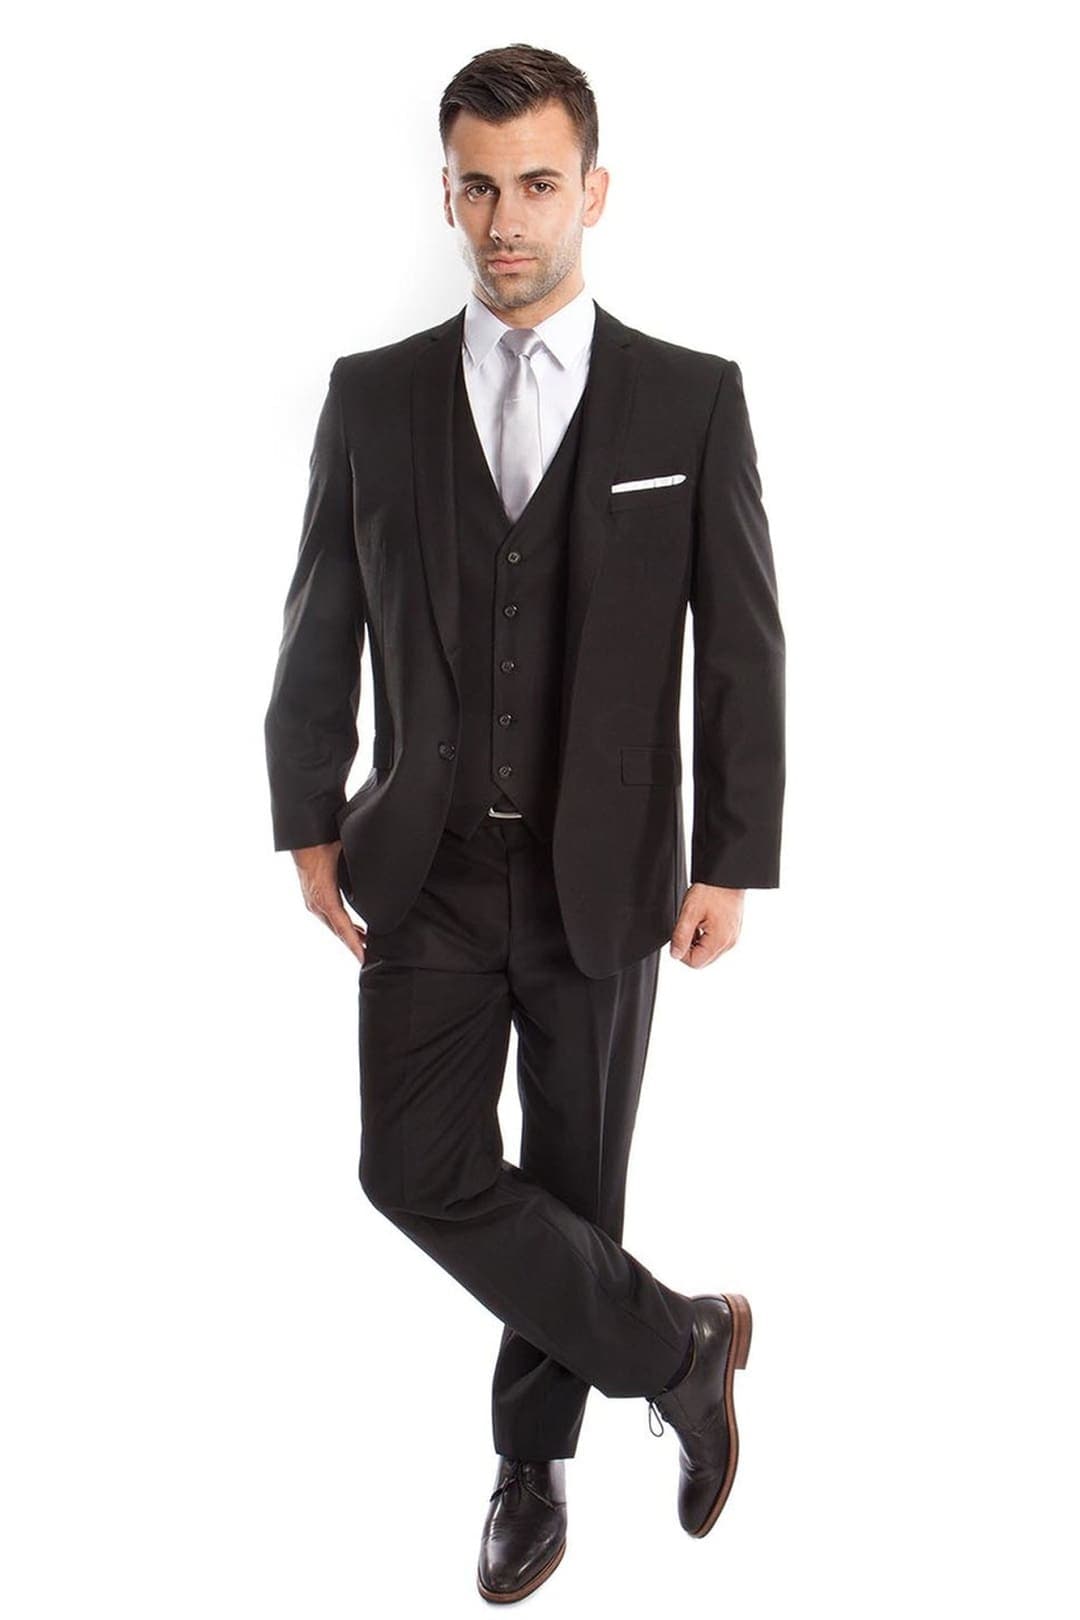 Ultra Slim Fit 3 Piece Men’s Suit - Black 01 / US34S/W28 / EU44S/W38 - Mens Suits